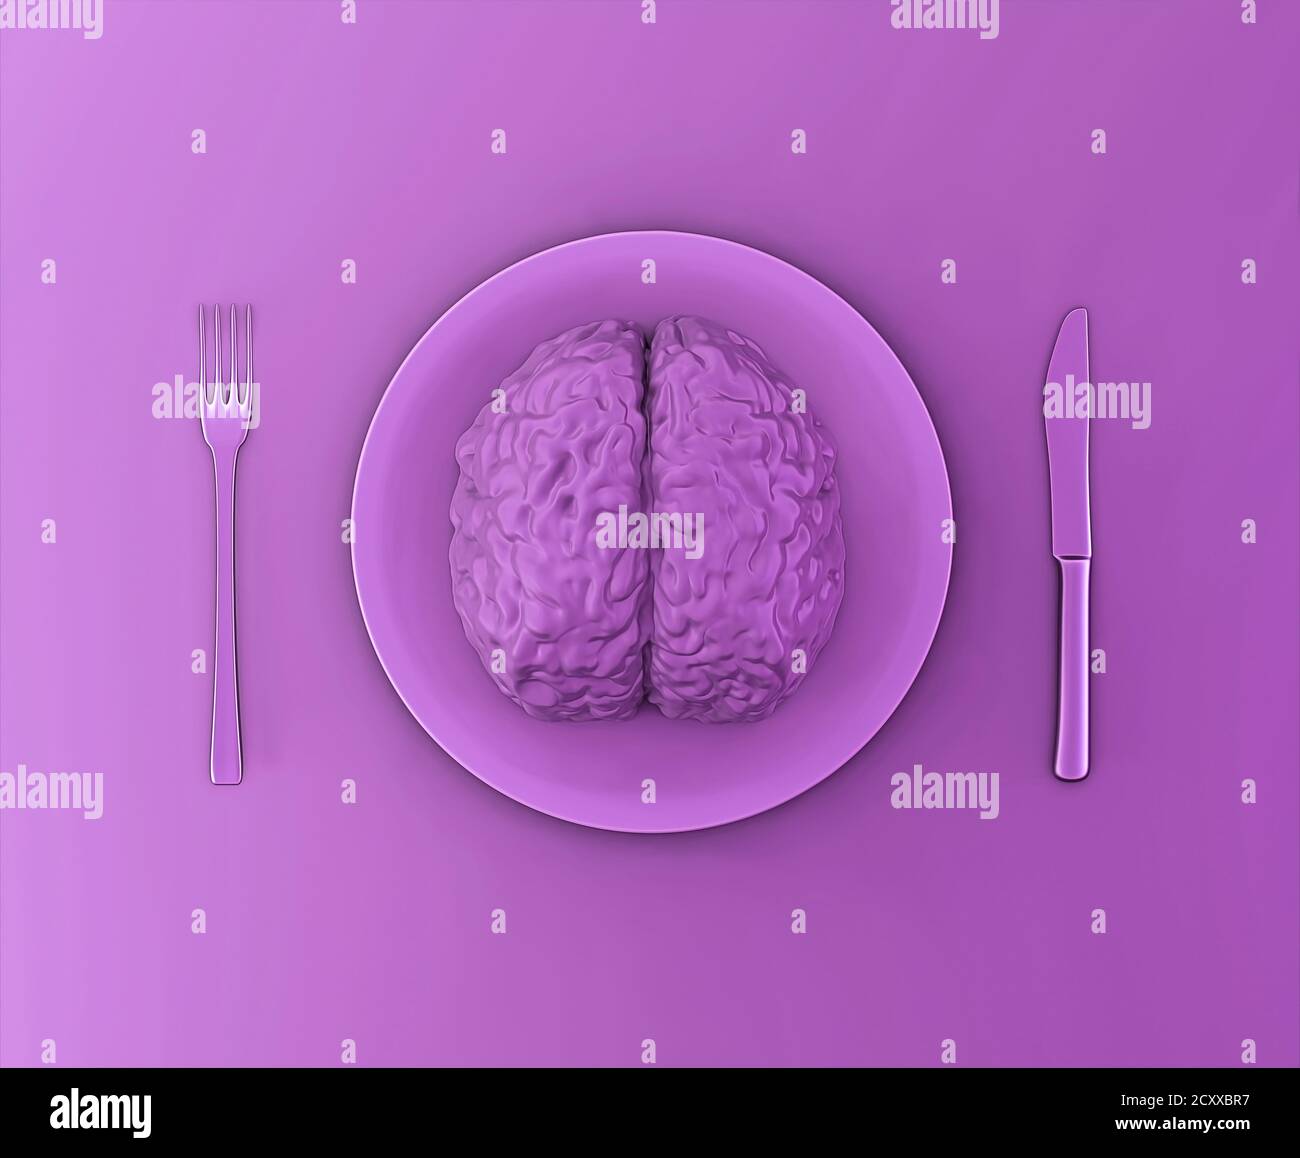 Das menschliche Gehirn als Nahrung, Missbrauch, Liebesbeziehung oder Brainstorming Konzept. Menschliches Gehirn auf einem Teller mit Gabel und Messer, 3d-Illustration Stockfoto